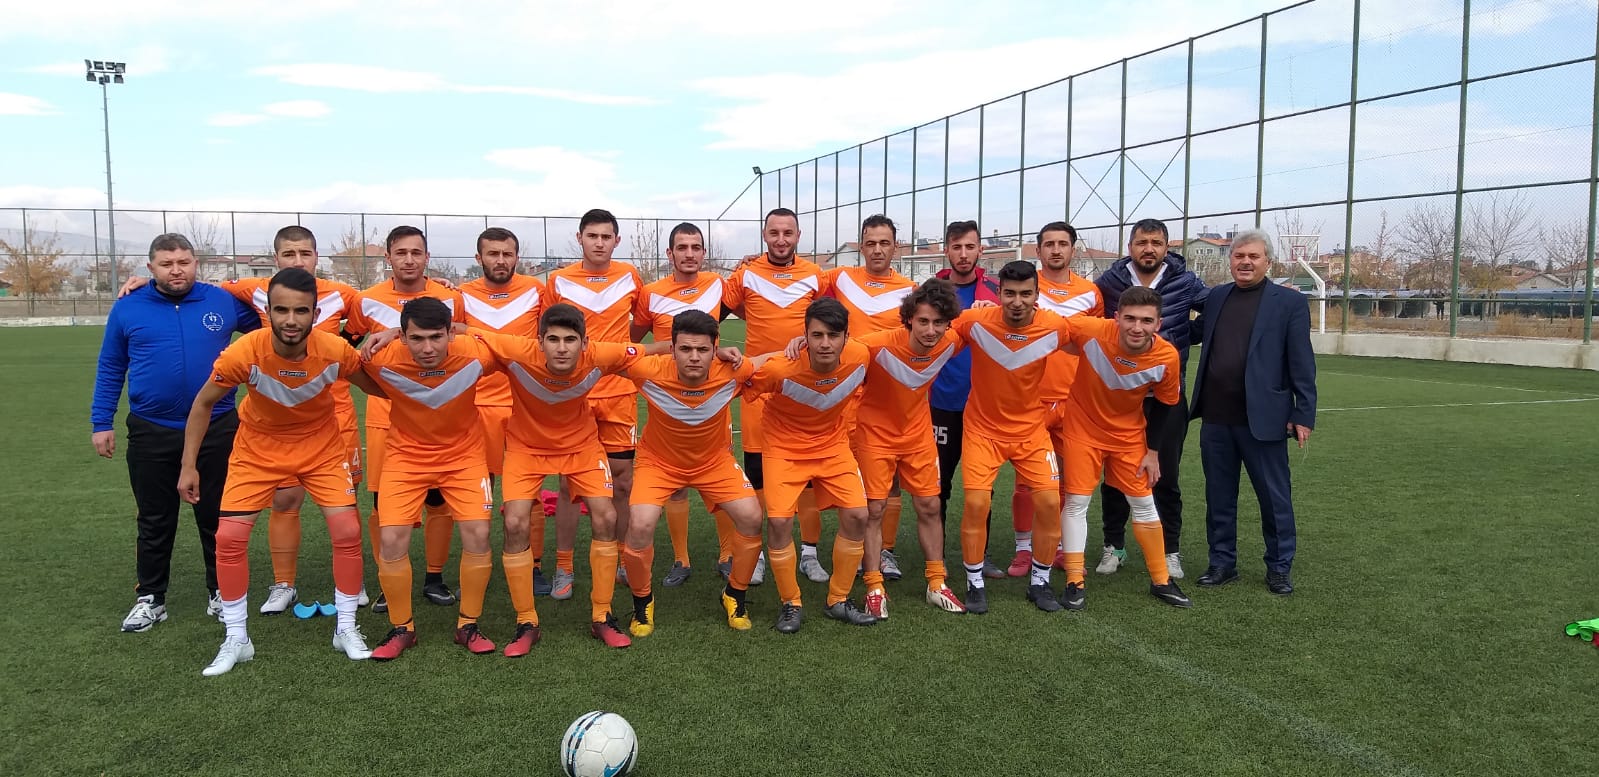 Konya’daki ‘Amatör’ spor kulüplerini tanıyalım: Taşkentspor